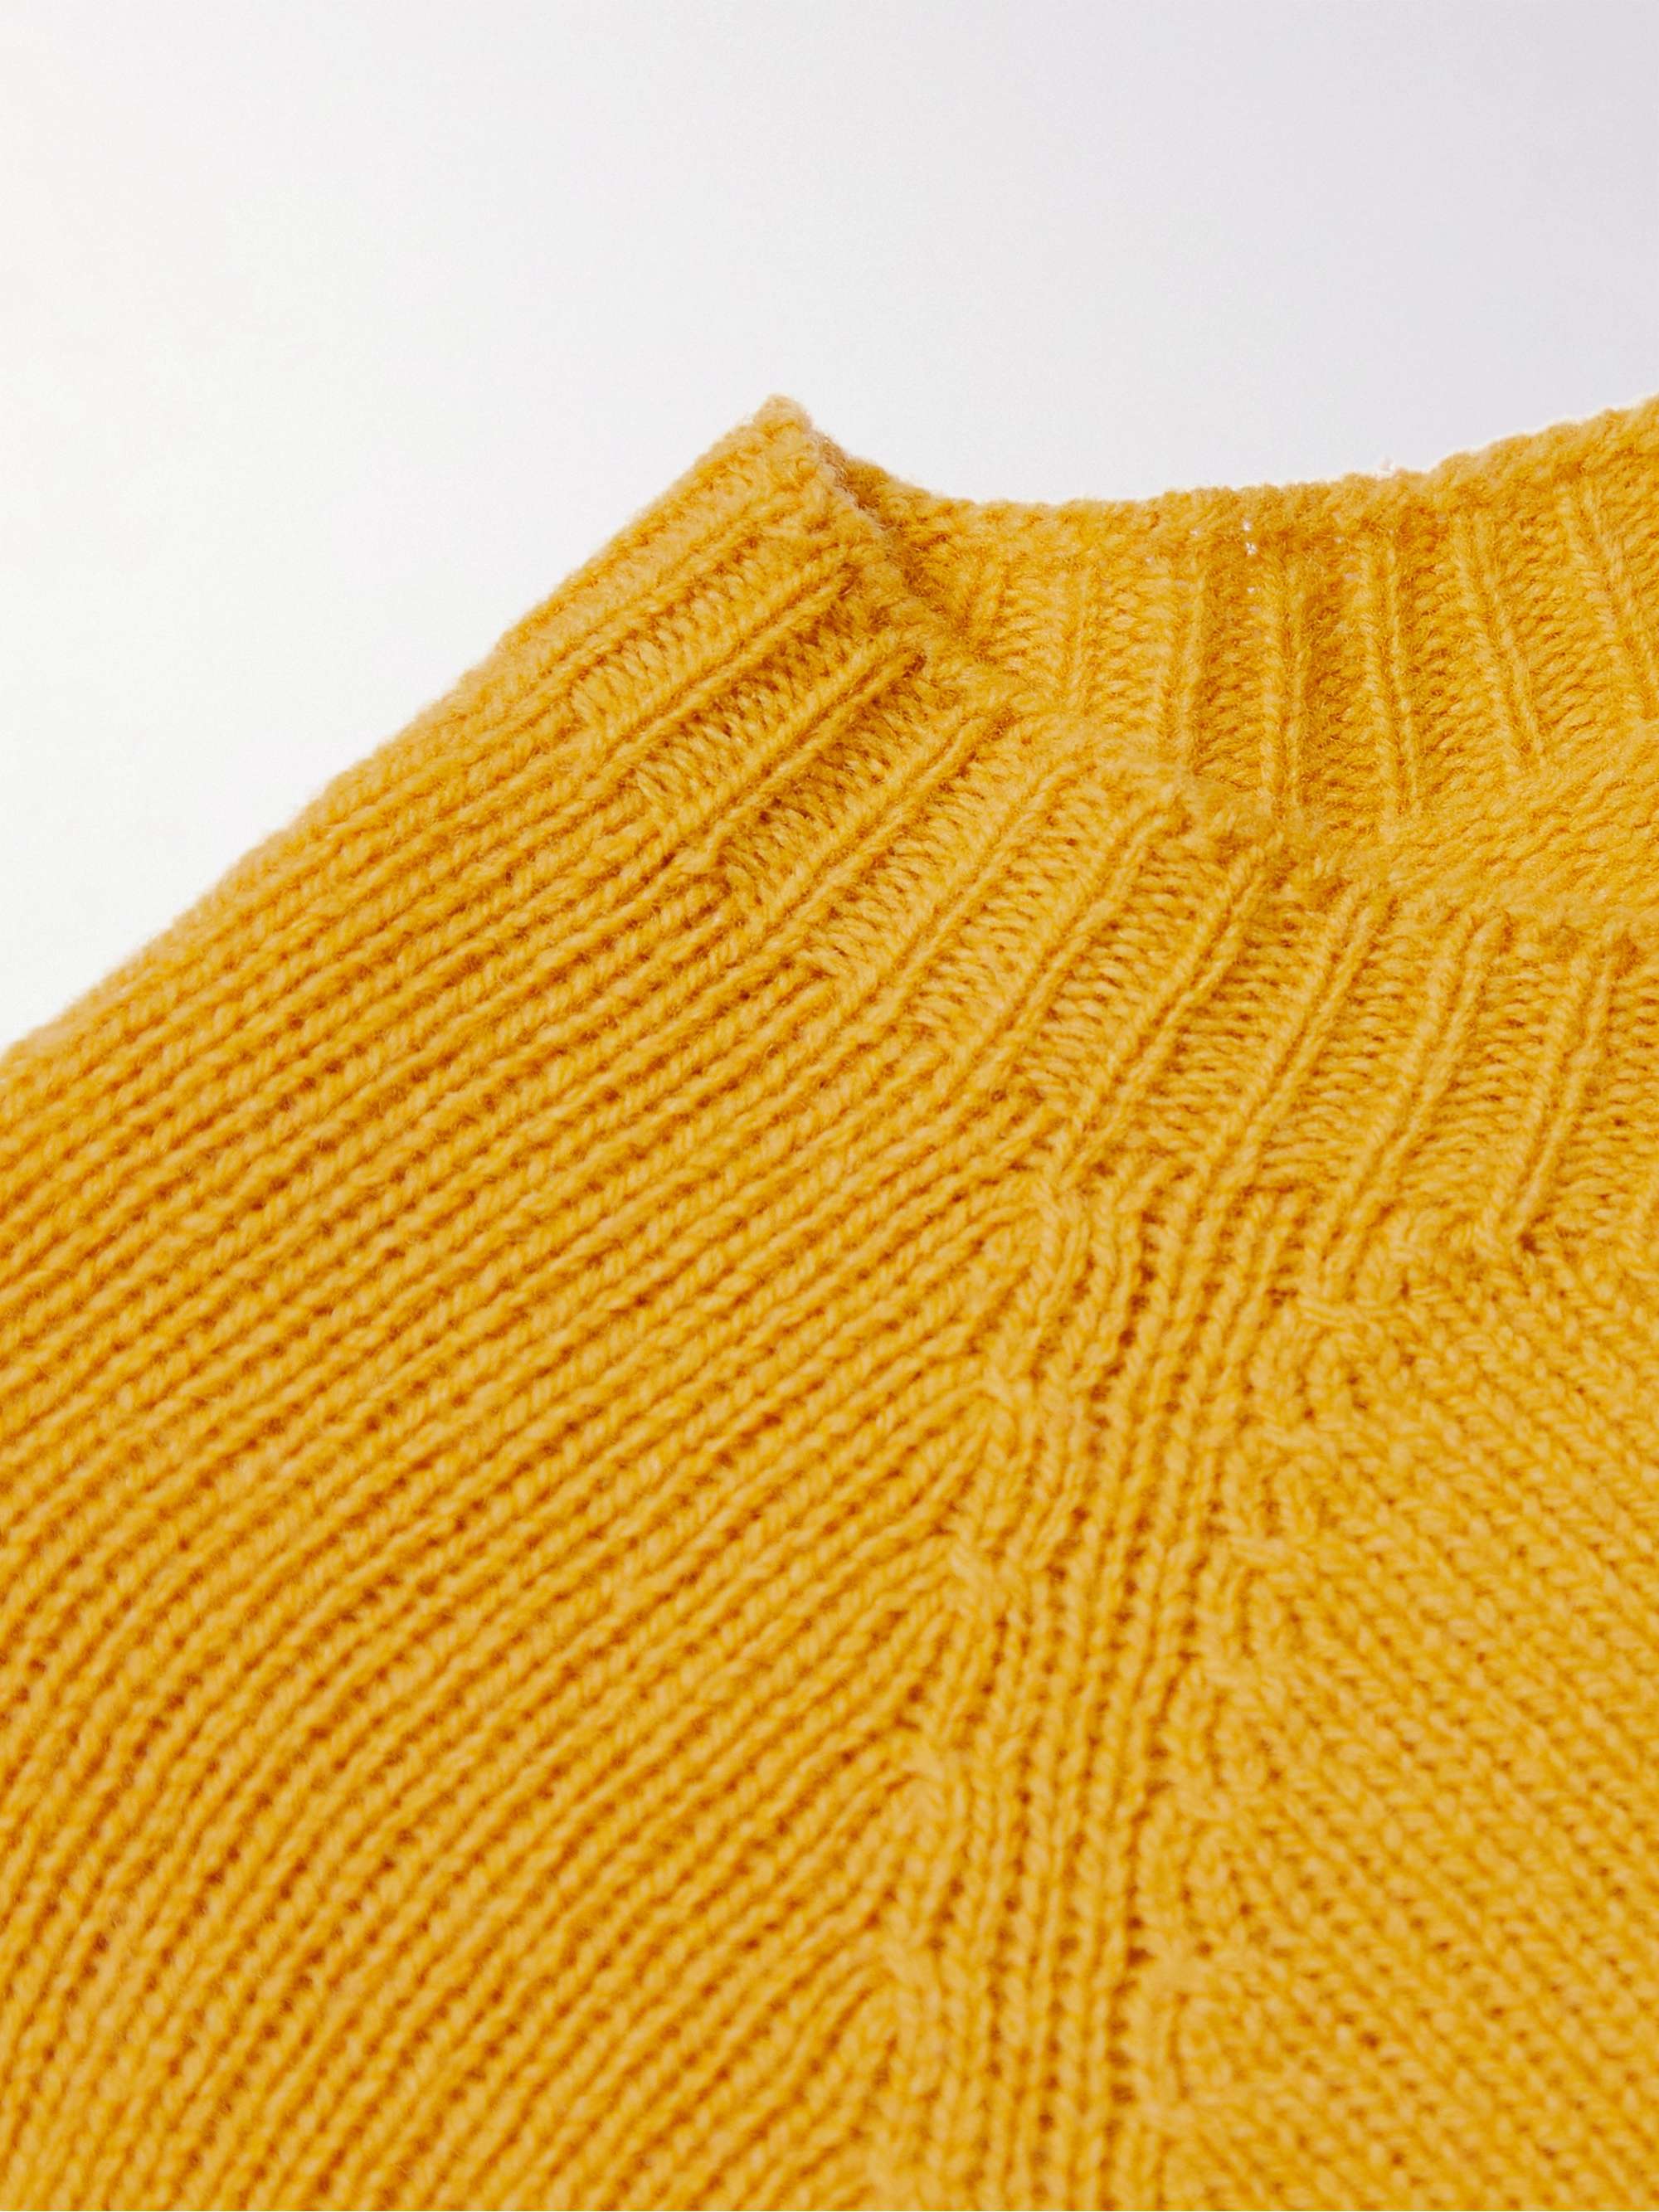 SUNSPEL Shetland Wool Sweater